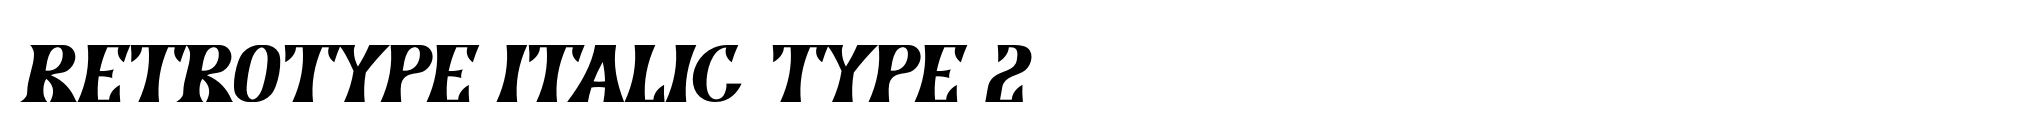 Retrotype Italic Type 2 image